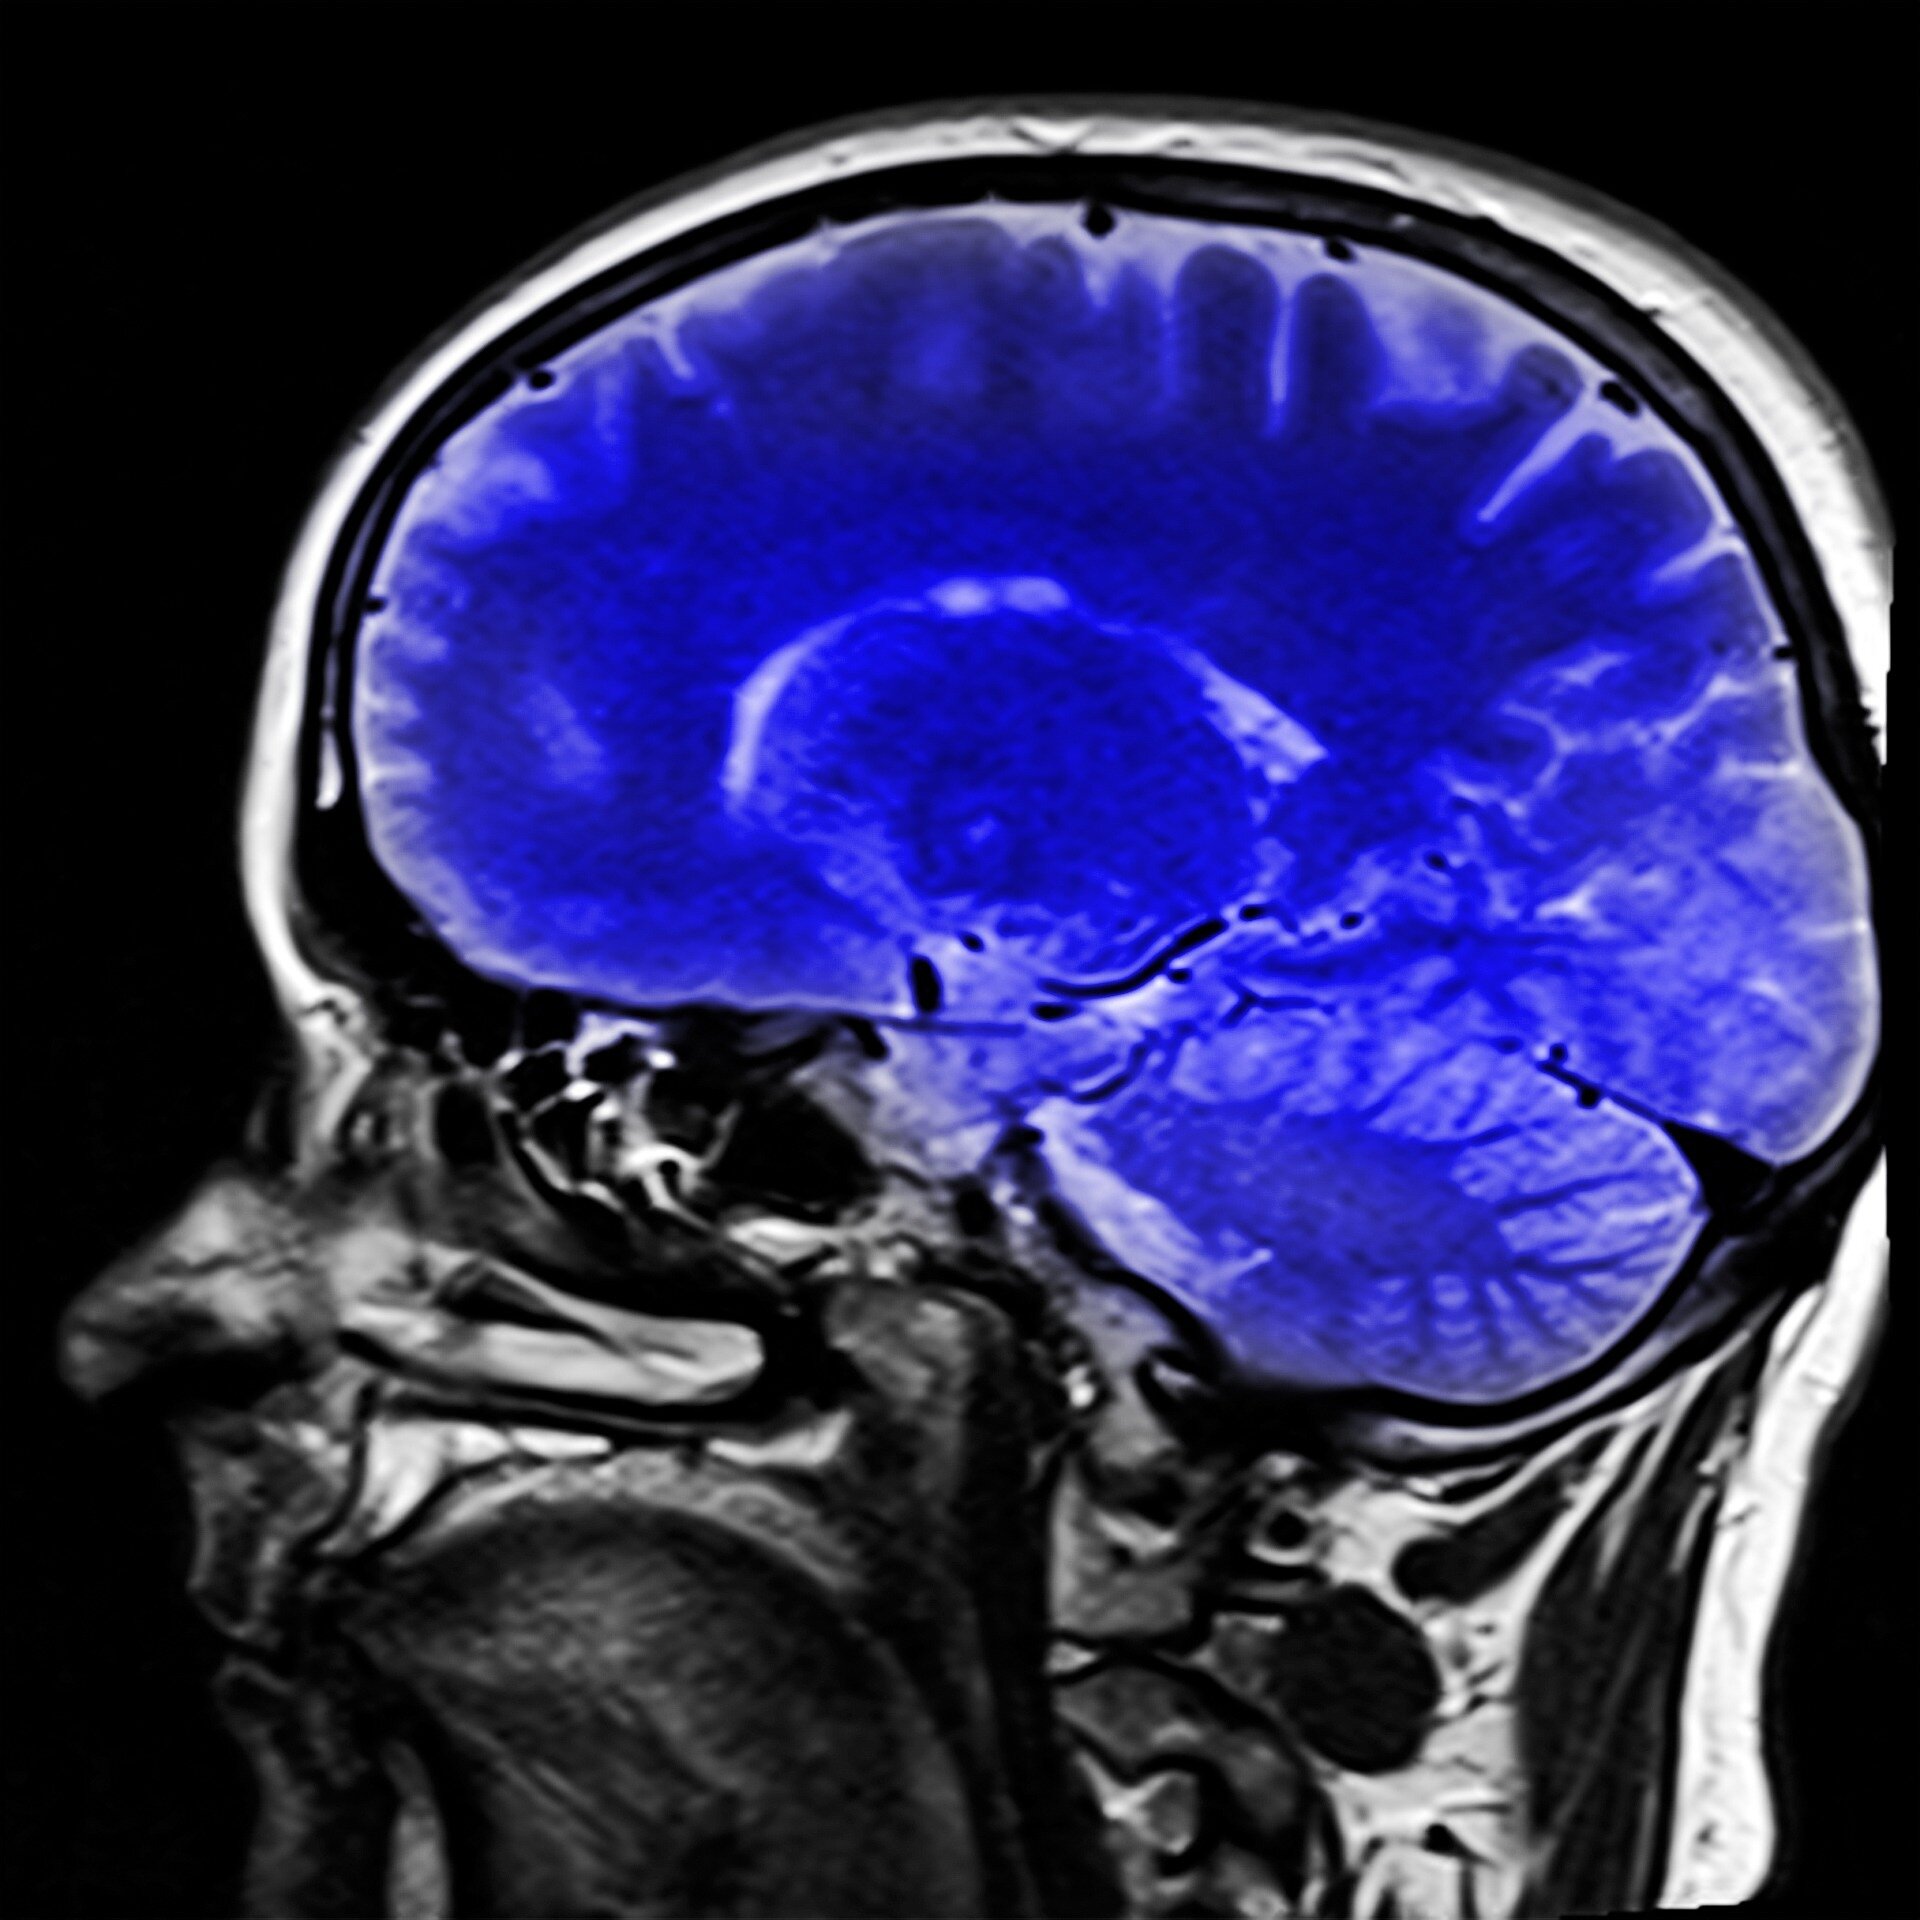 Une étude d'imagerie cérébrale révèle des connexions essentielles à la conscience humaine